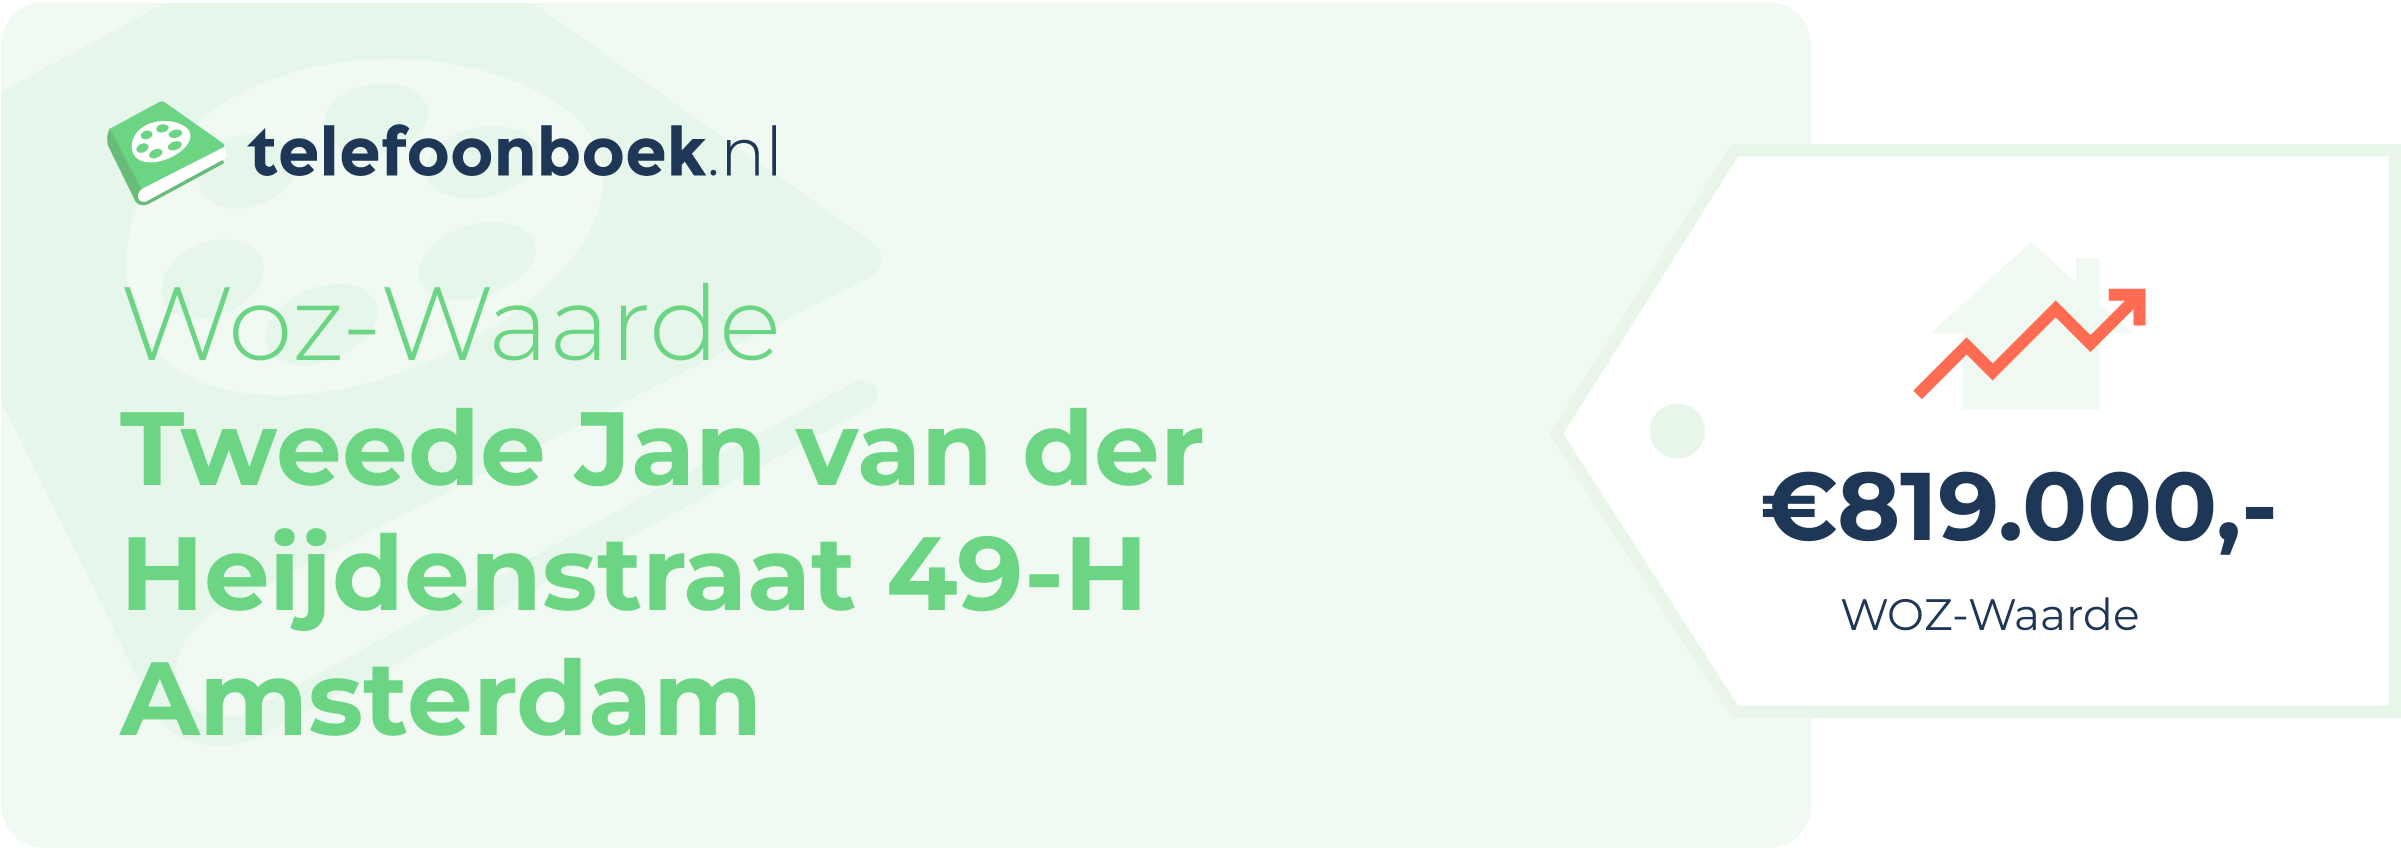 WOZ-waarde Tweede Jan Van Der Heijdenstraat 49-H Amsterdam